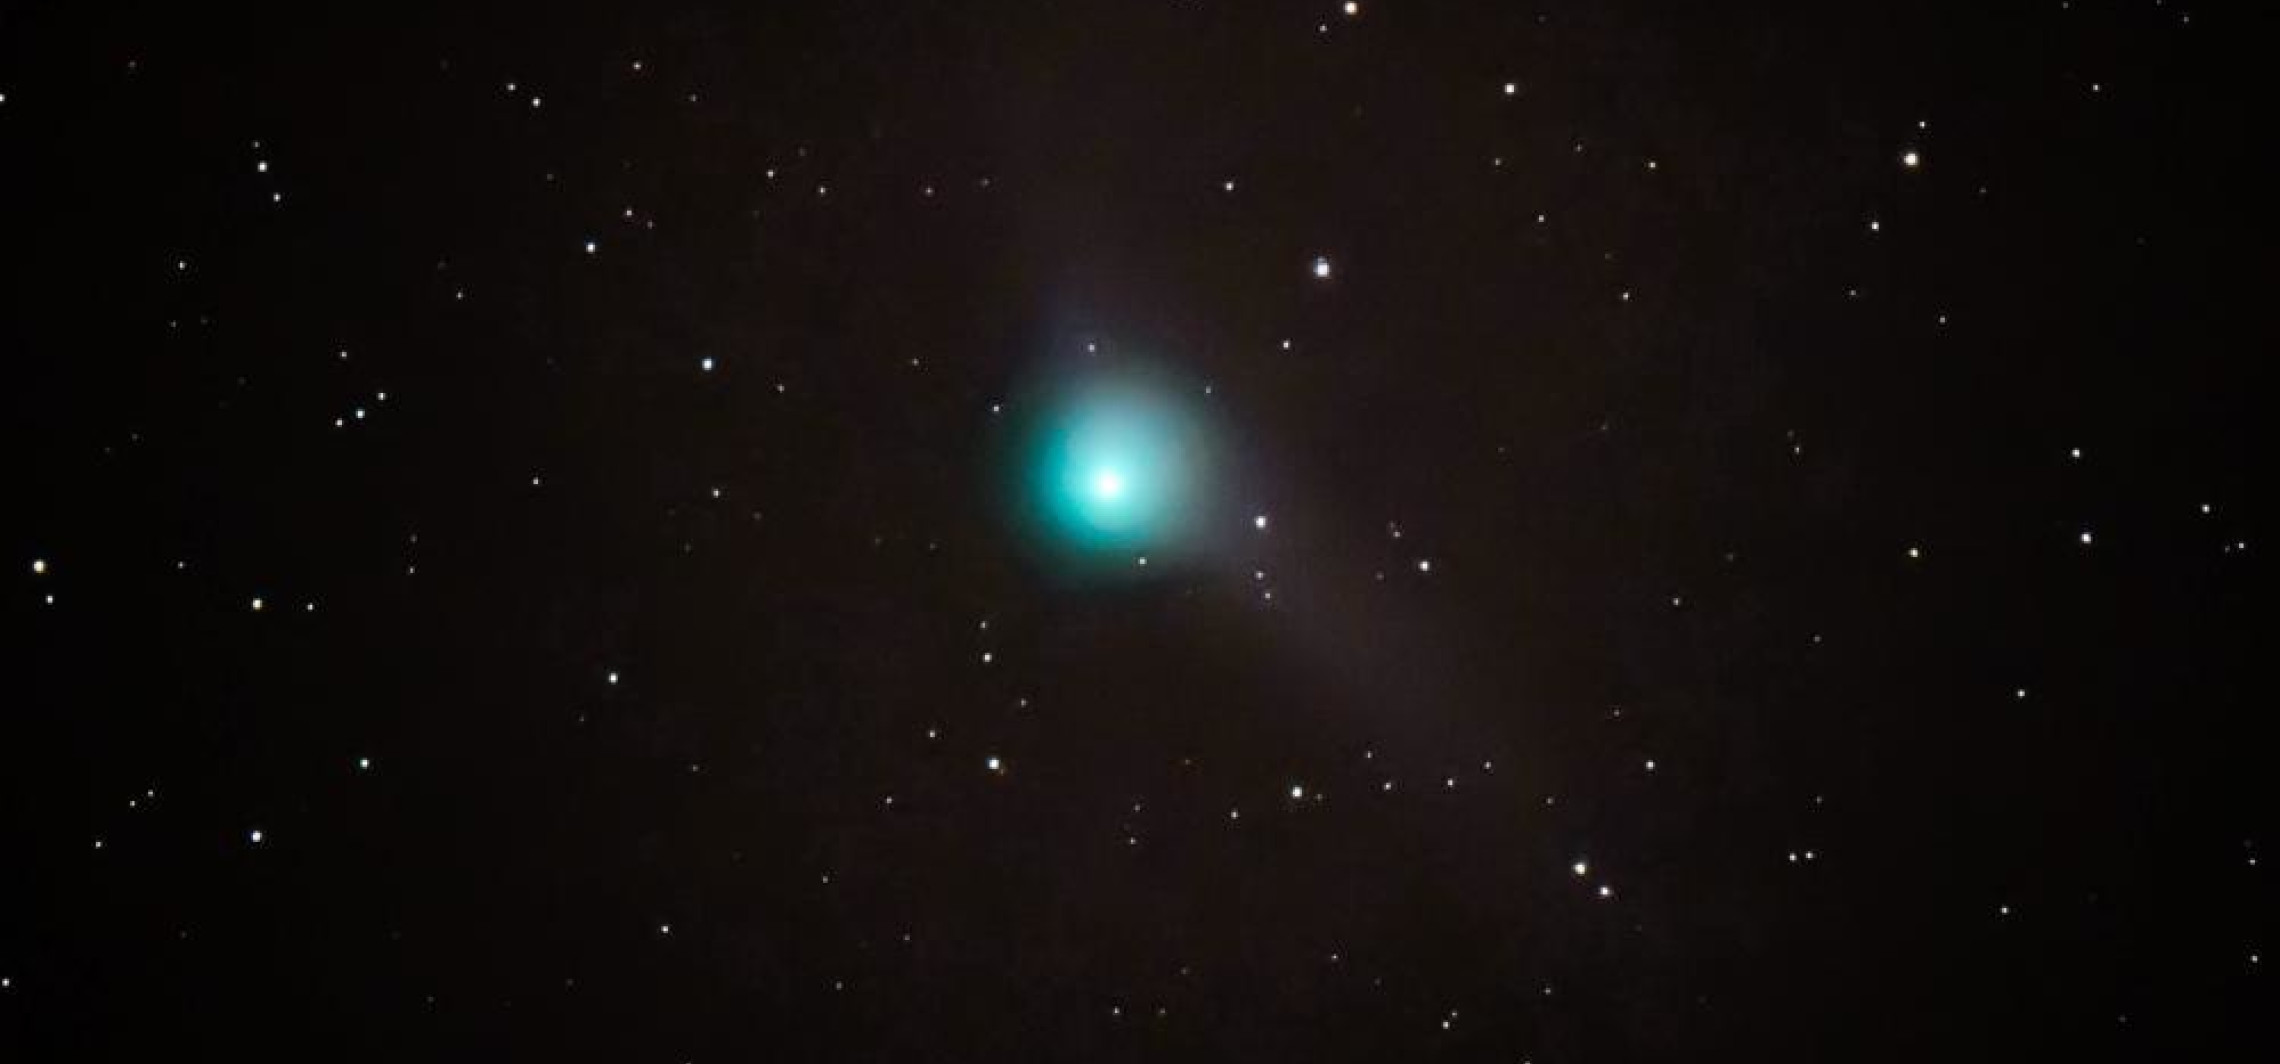 W czwartek kometa najbliżej Ziemi; jej obserwację może utrudnić zachmurzenie 